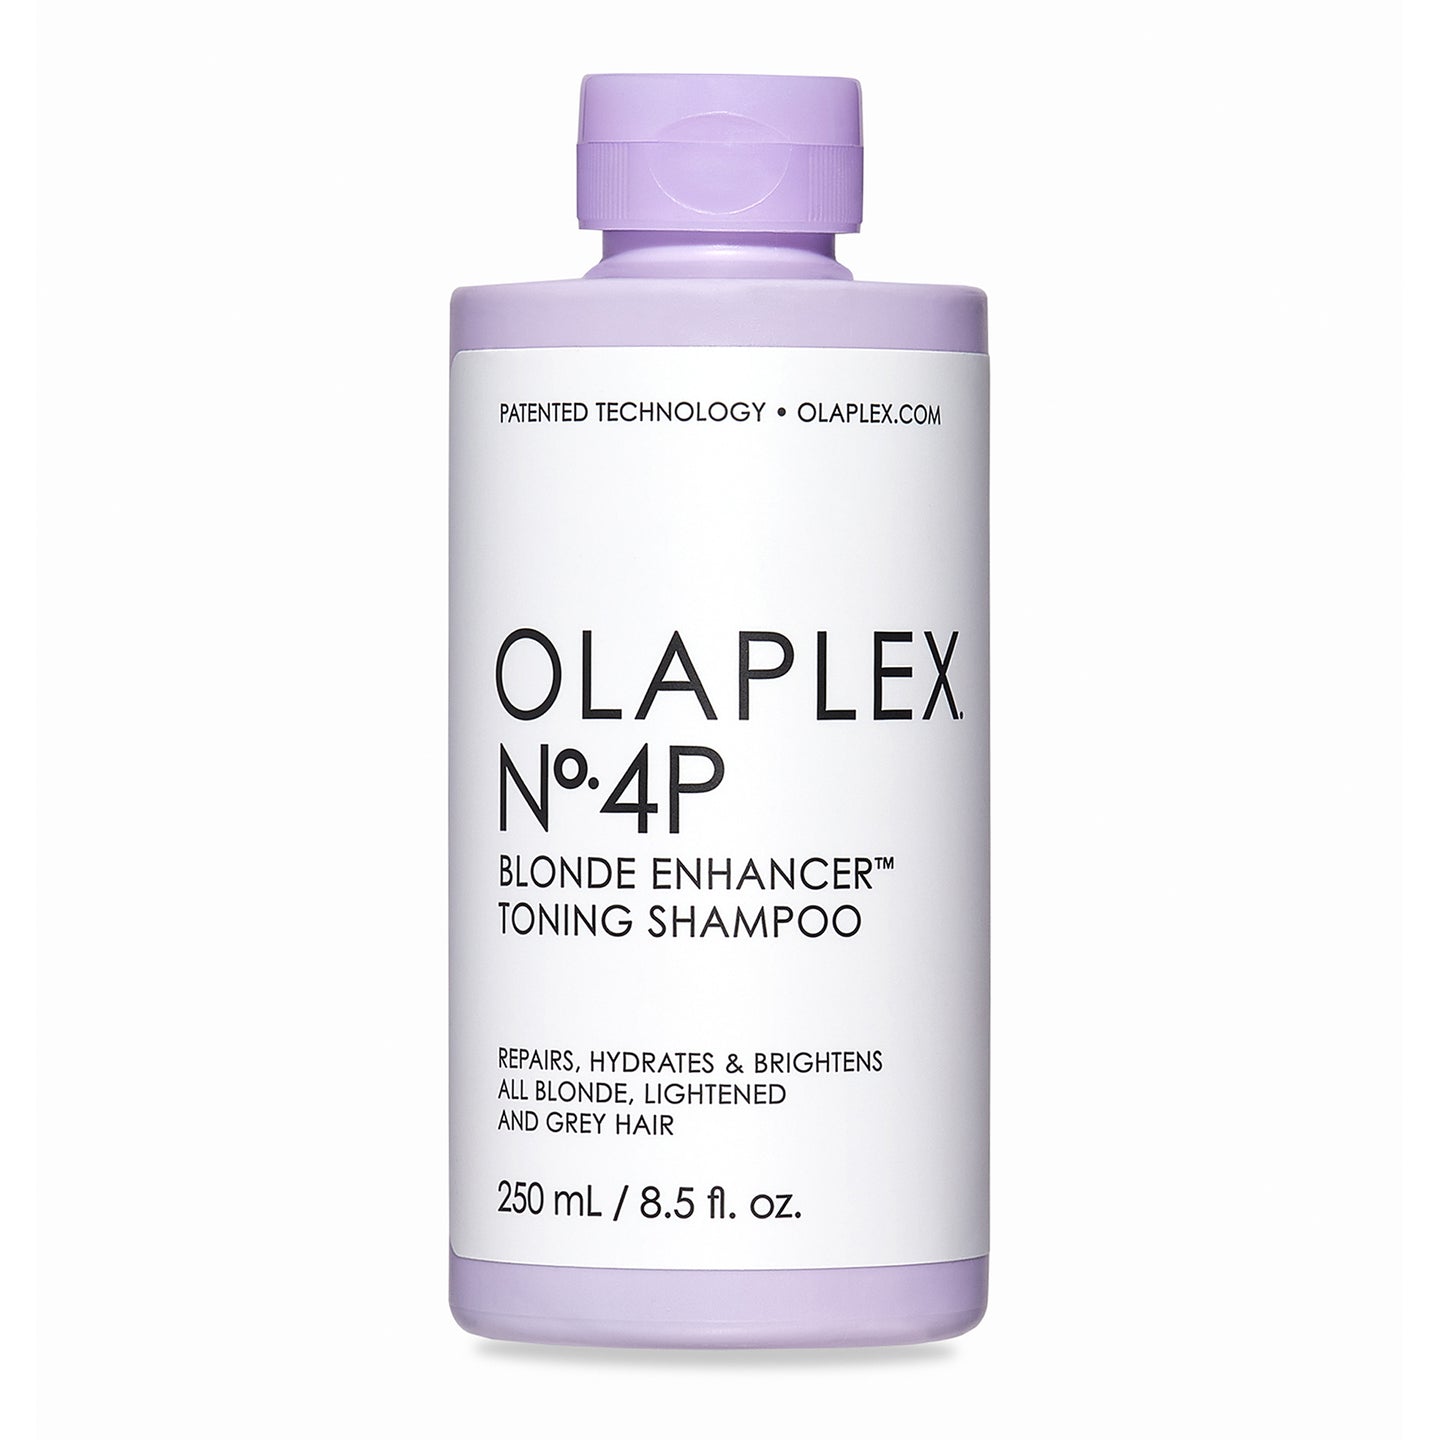 OLAPLEX No.4P Blonde Enhancer Toning Shampoo - 8.5 oz  (Buy 3 Get 1 Free Mix & Match)